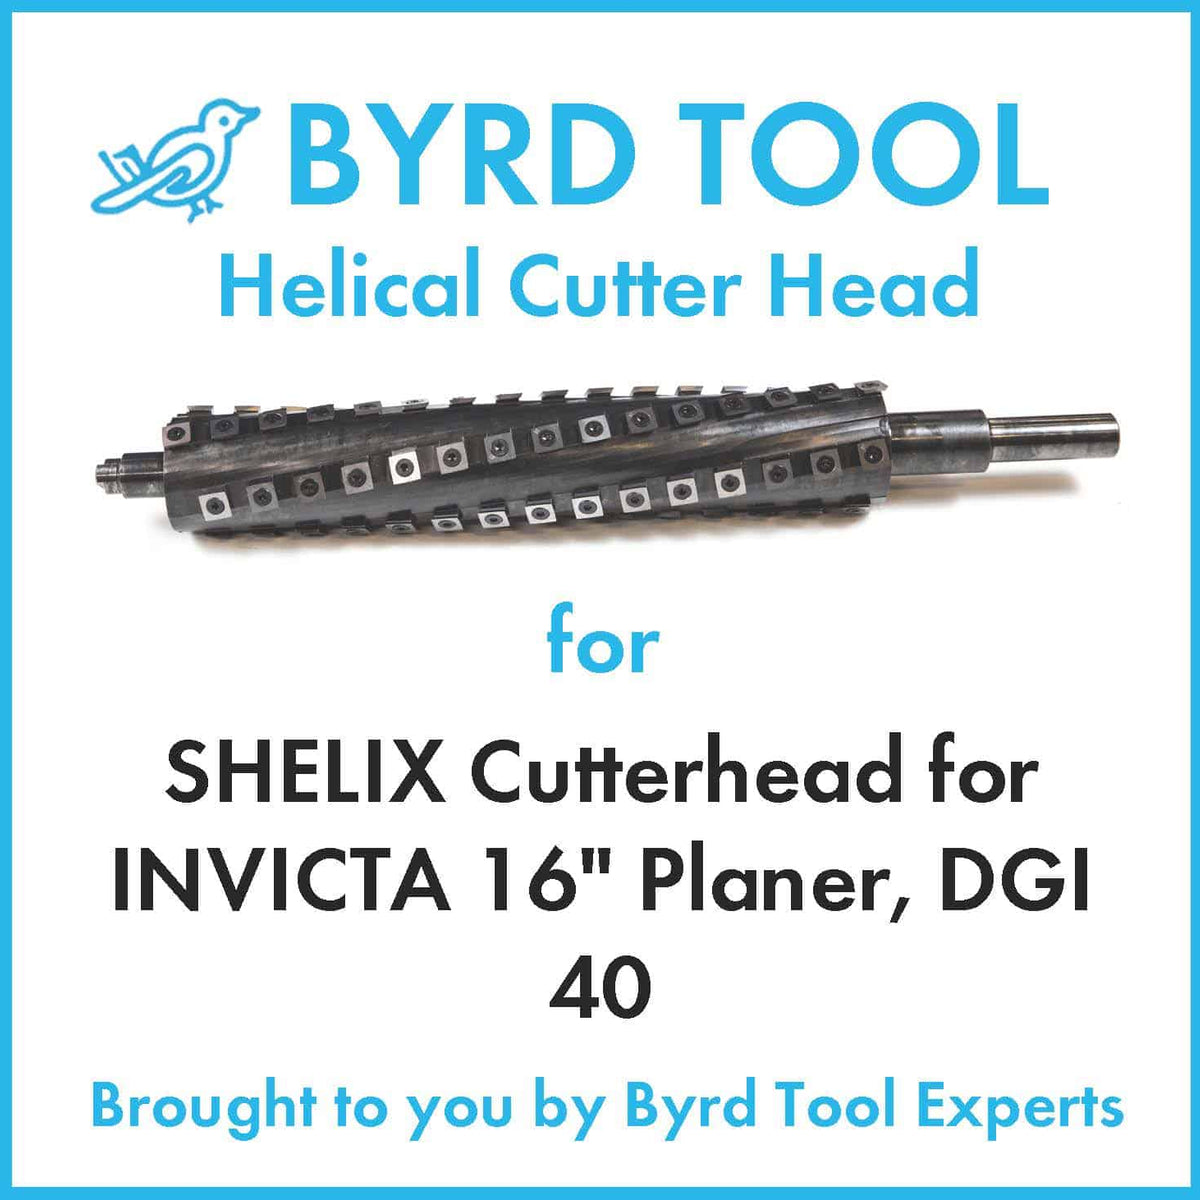 SHELIX Cutterhead for INVICTA 16" Planer